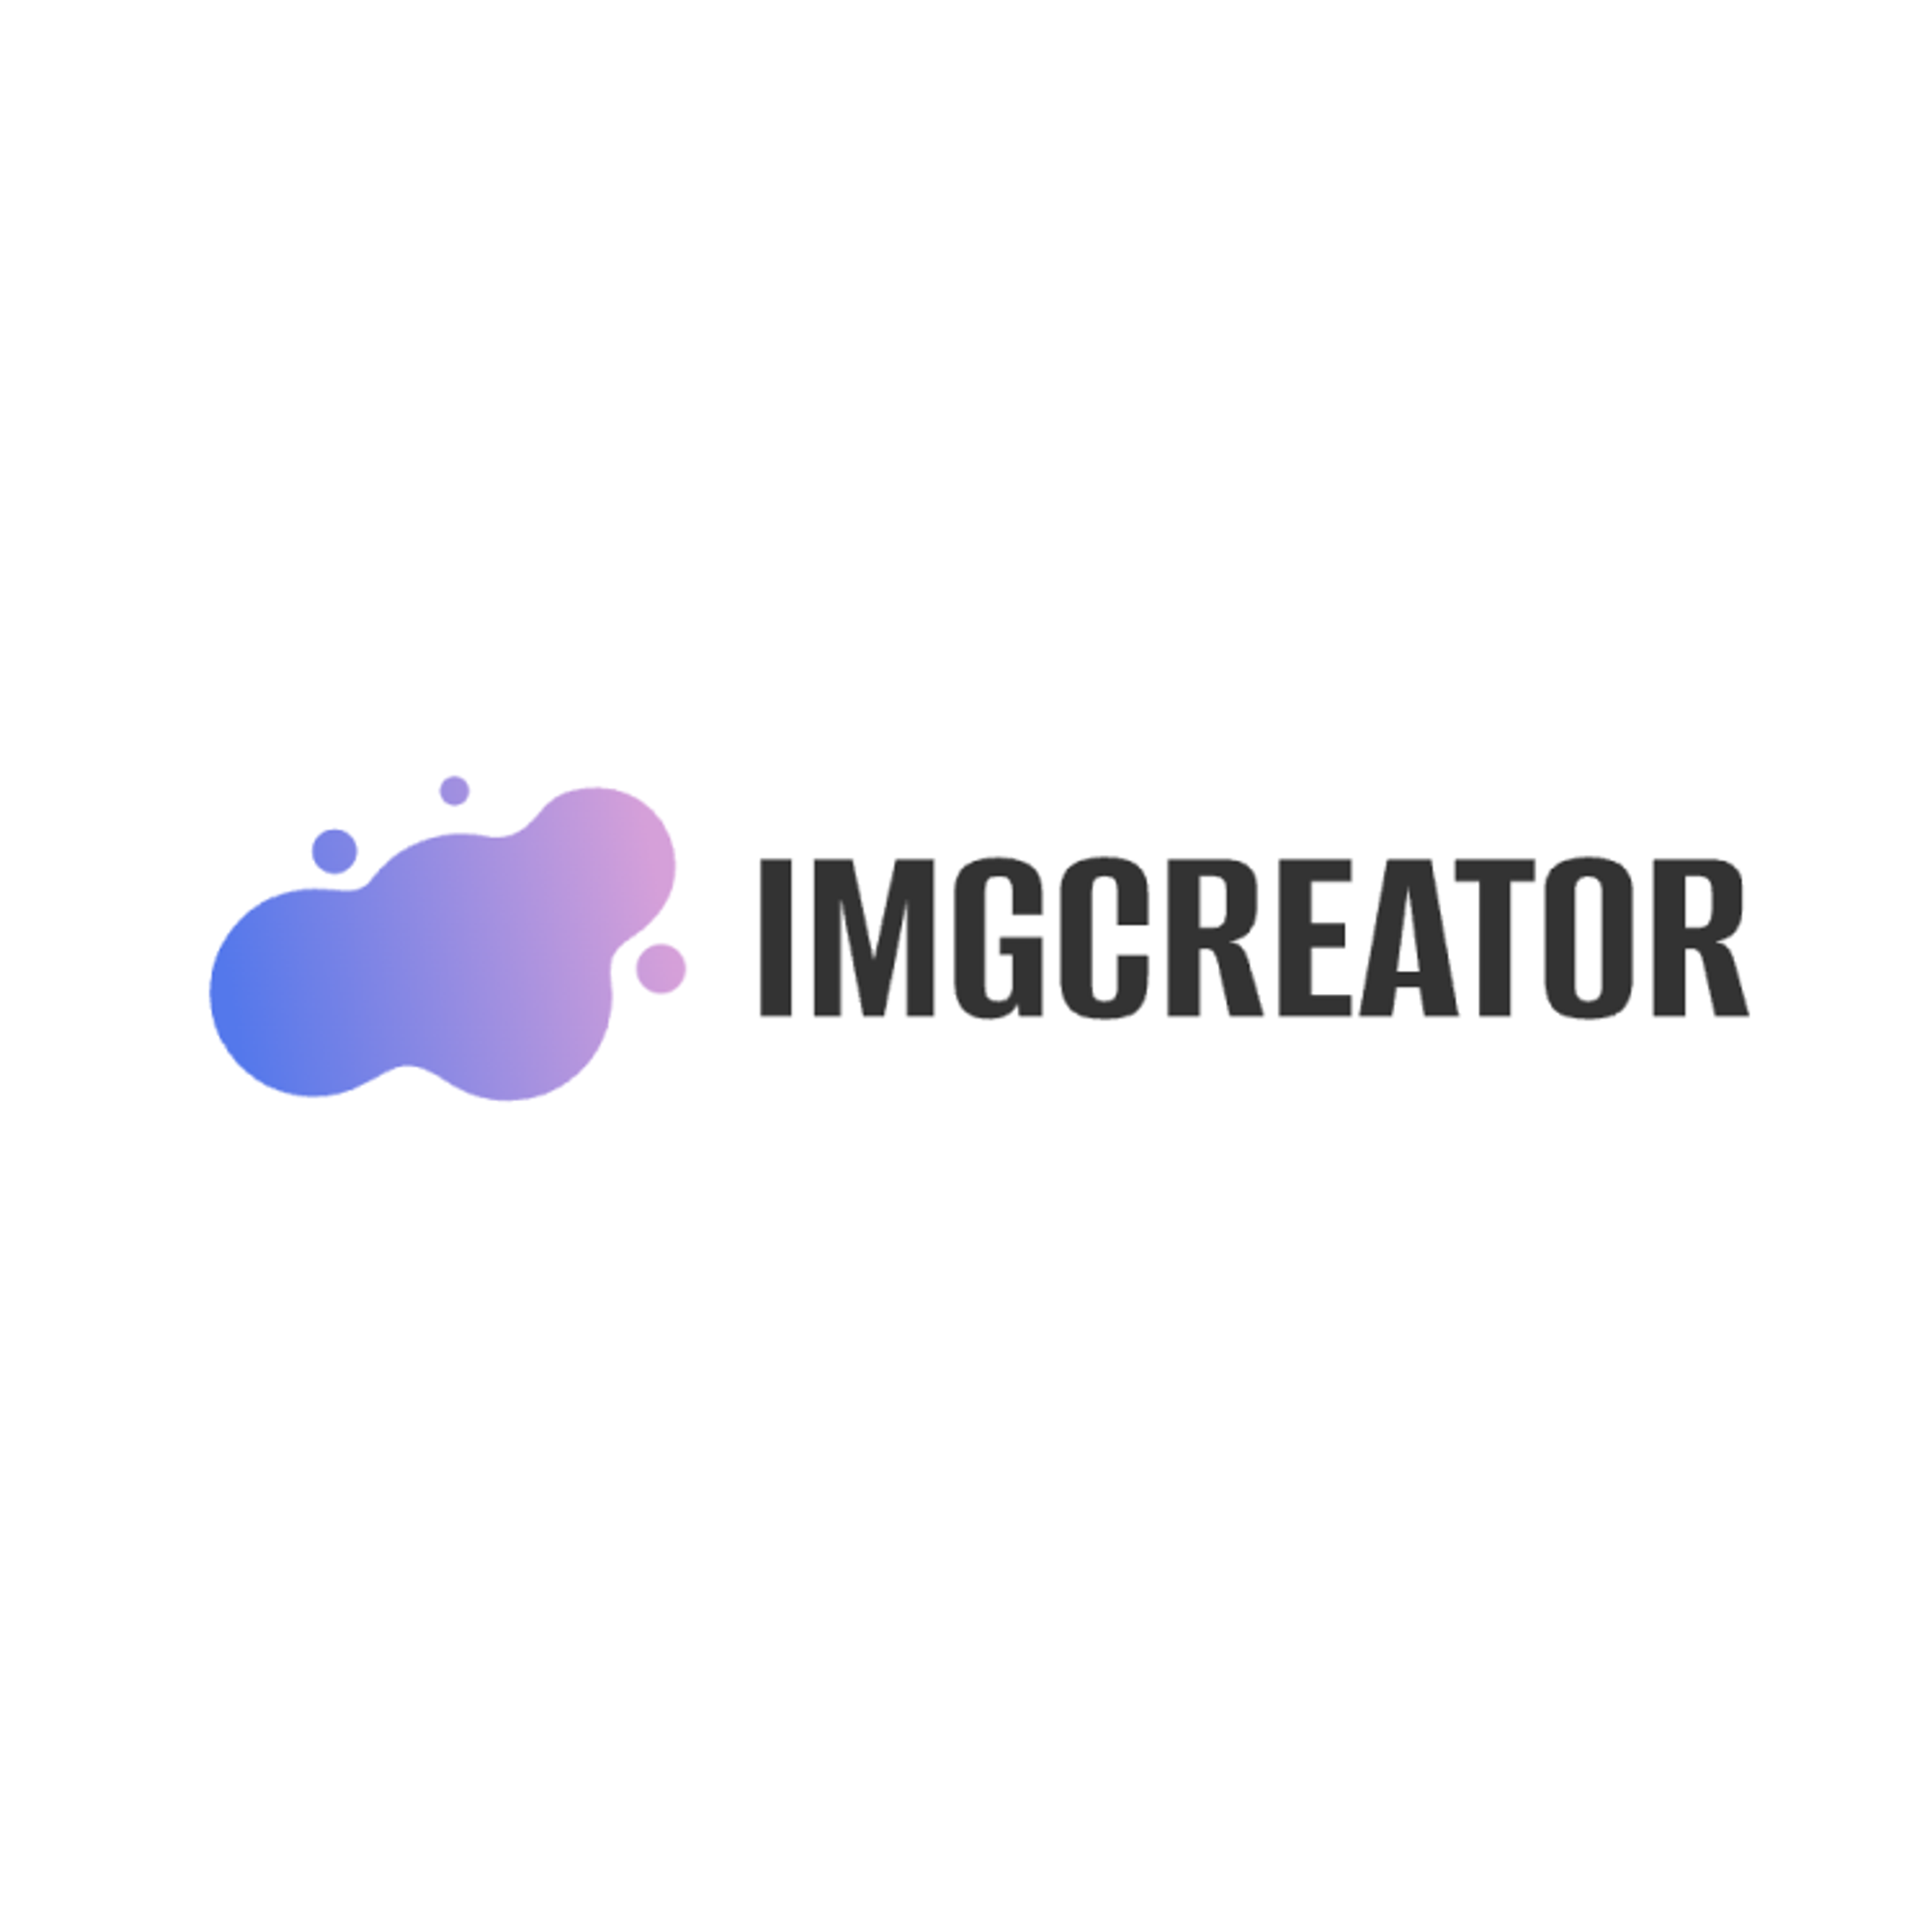 Imgcreator